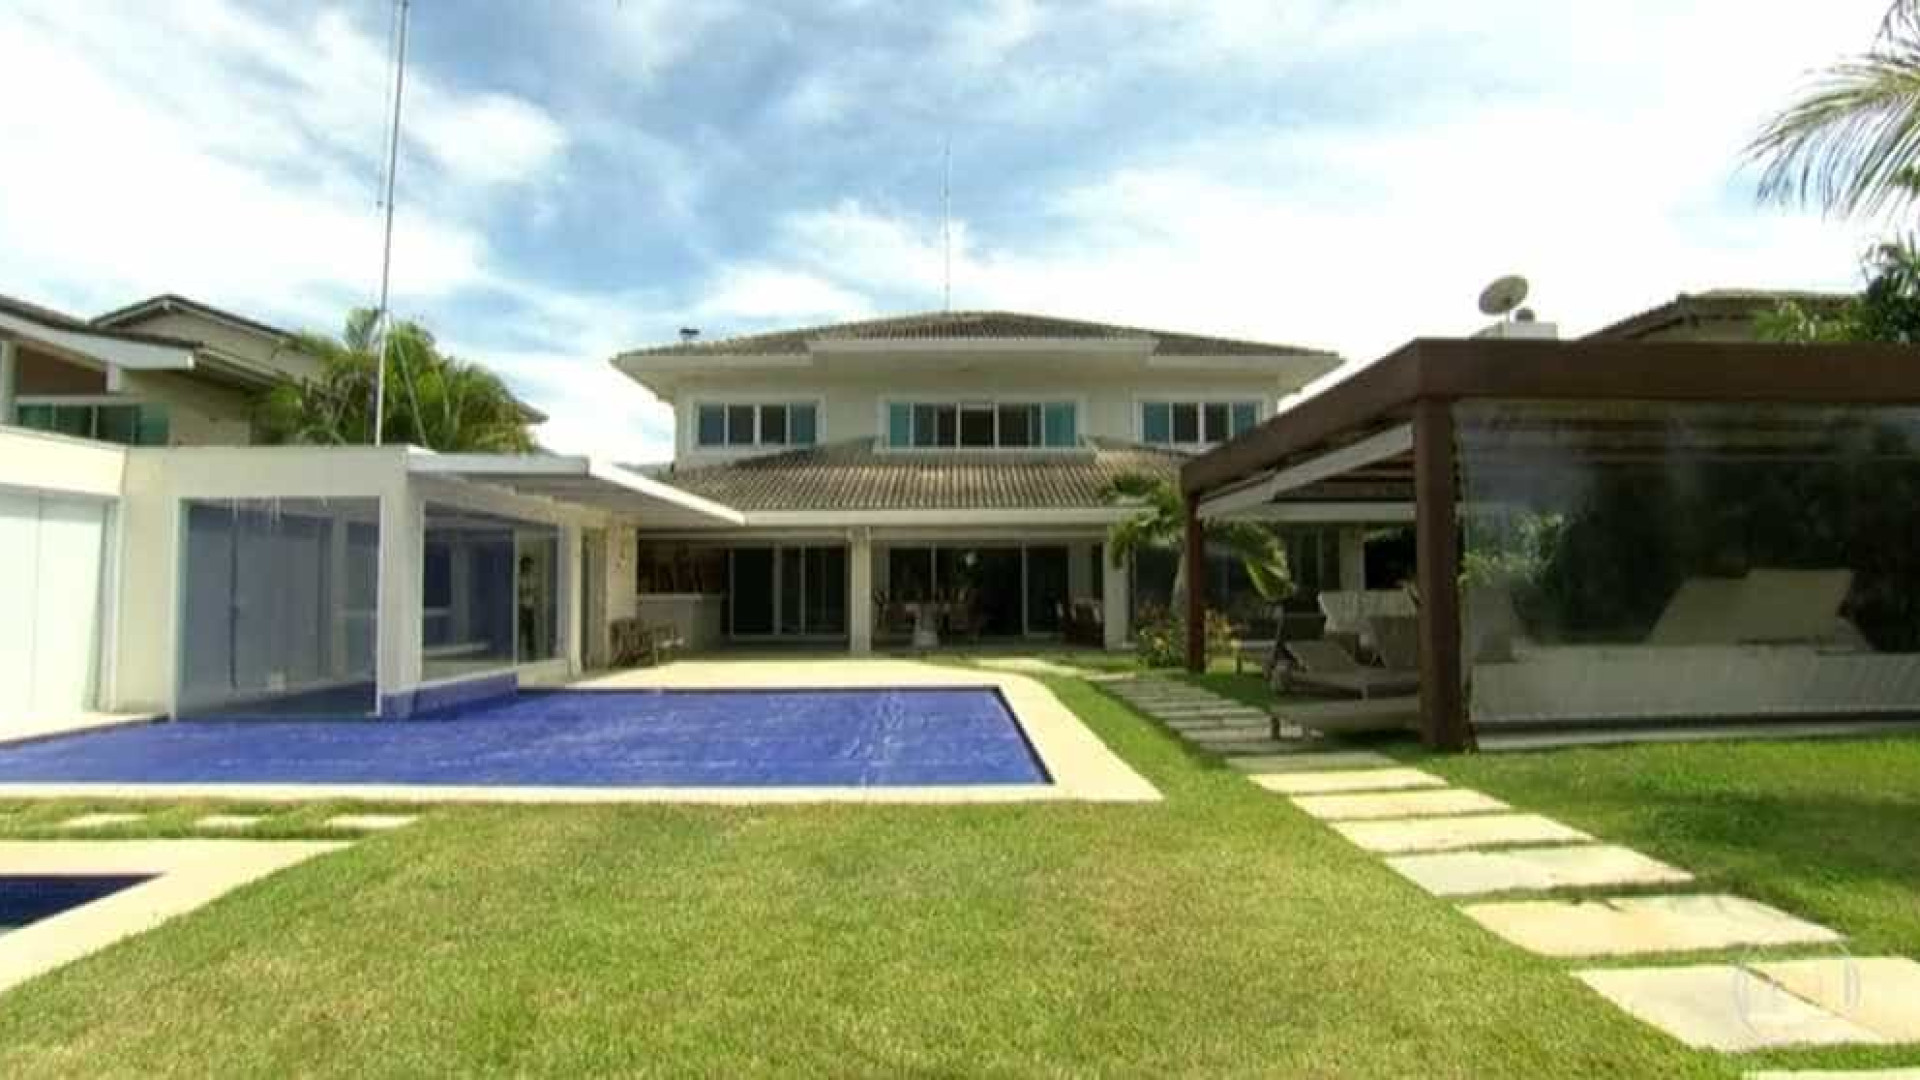 Casa de Cabral é leiloada por R$ 6,4 milhões